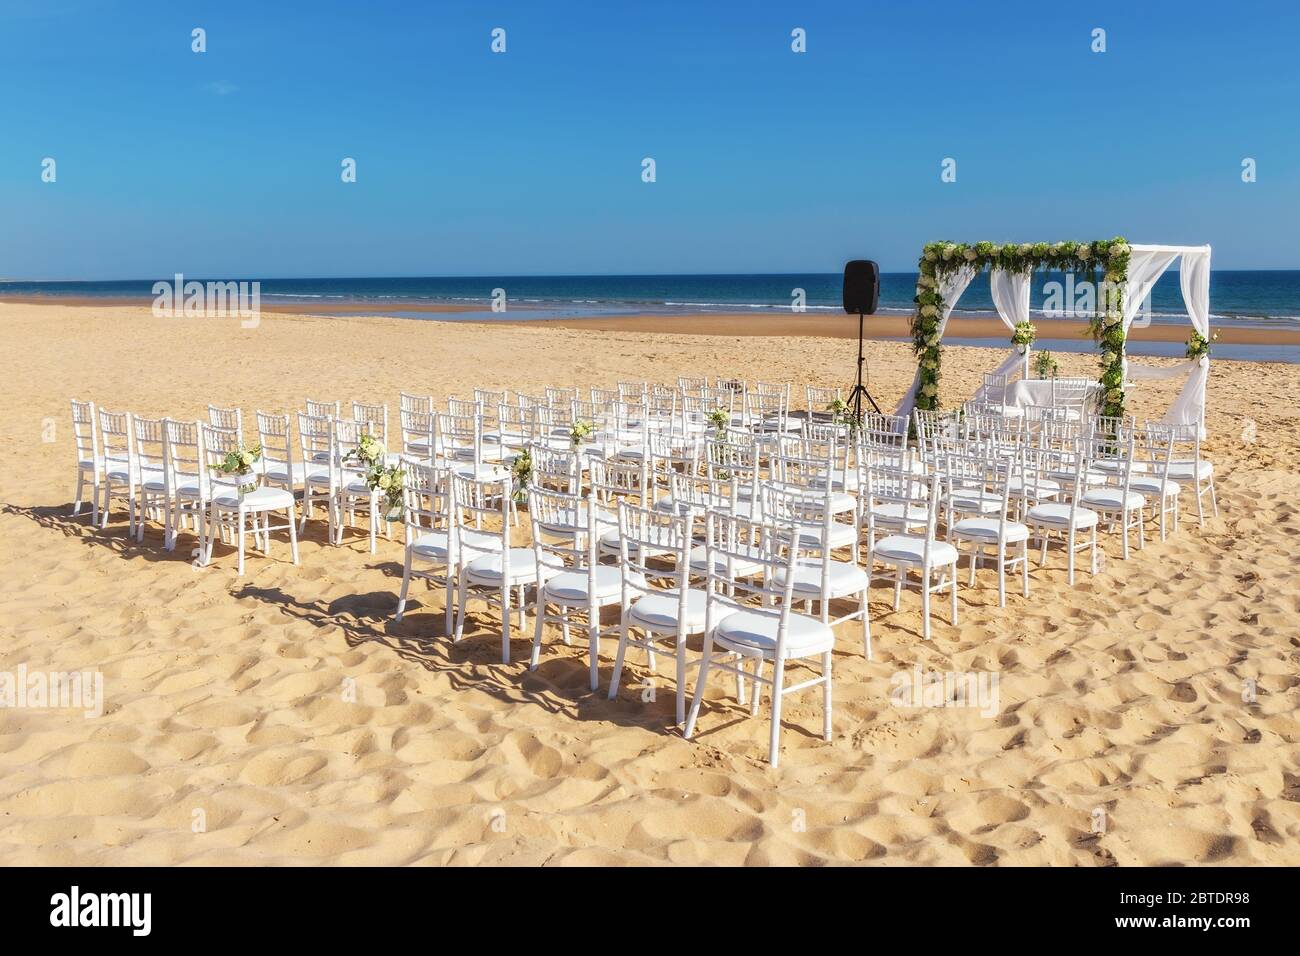 Vue romantique et décorations florales sur la plage près de la mer, pour une cérémonie de mariage avec des fleurs. Europe, Portugal. Banque D'Images